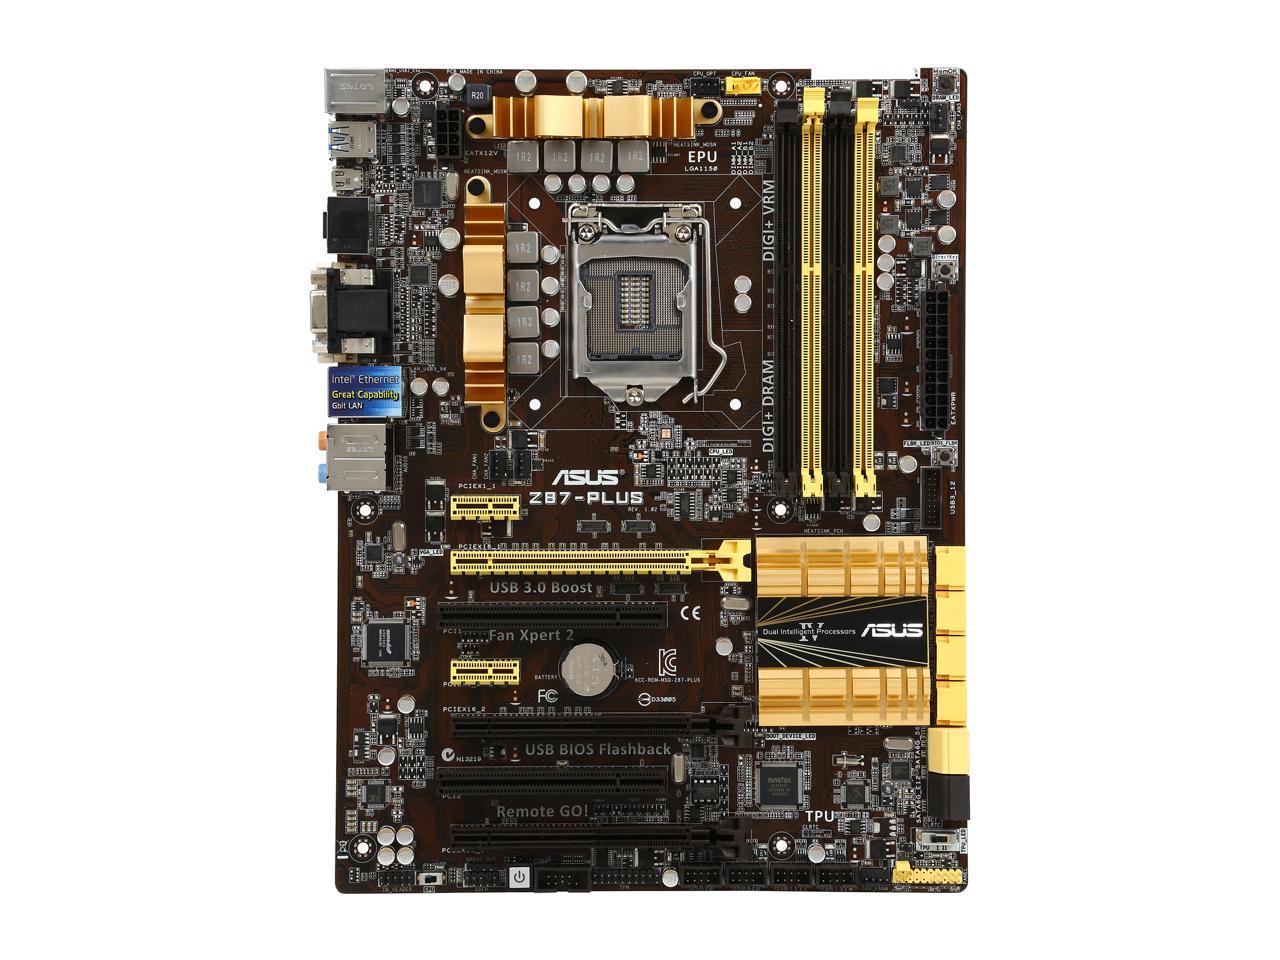 ASUS Z87-PLUS-R LGA 1150 Intel Z87 HDMI SATA 6Gb/s USB 3.0 ATX Intel Motherboard - Certified - Grade A